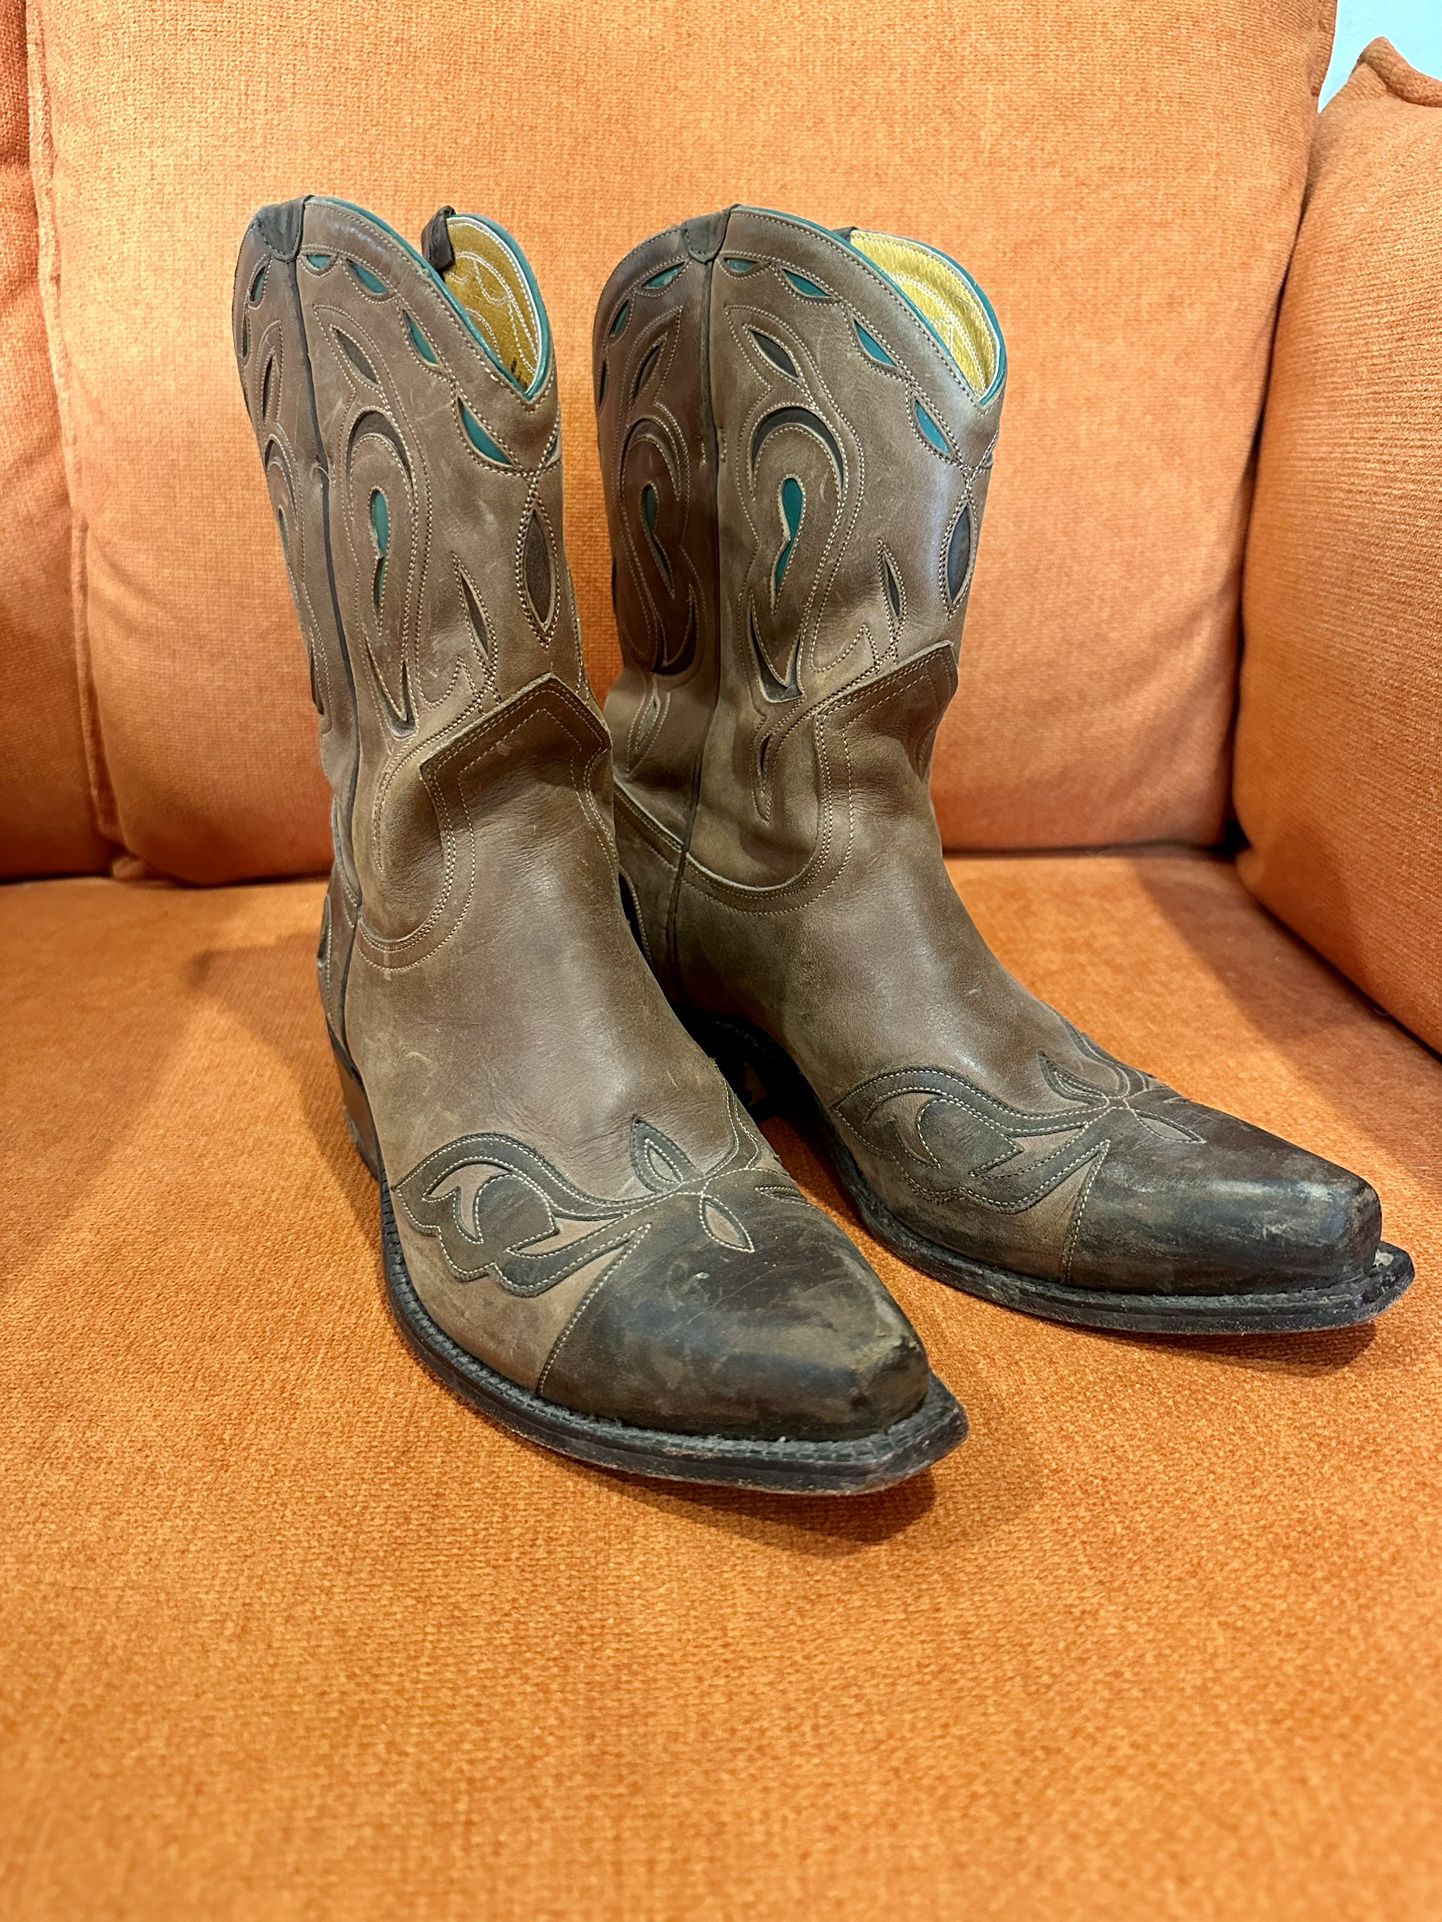 Vintage Women Cowboy Boots